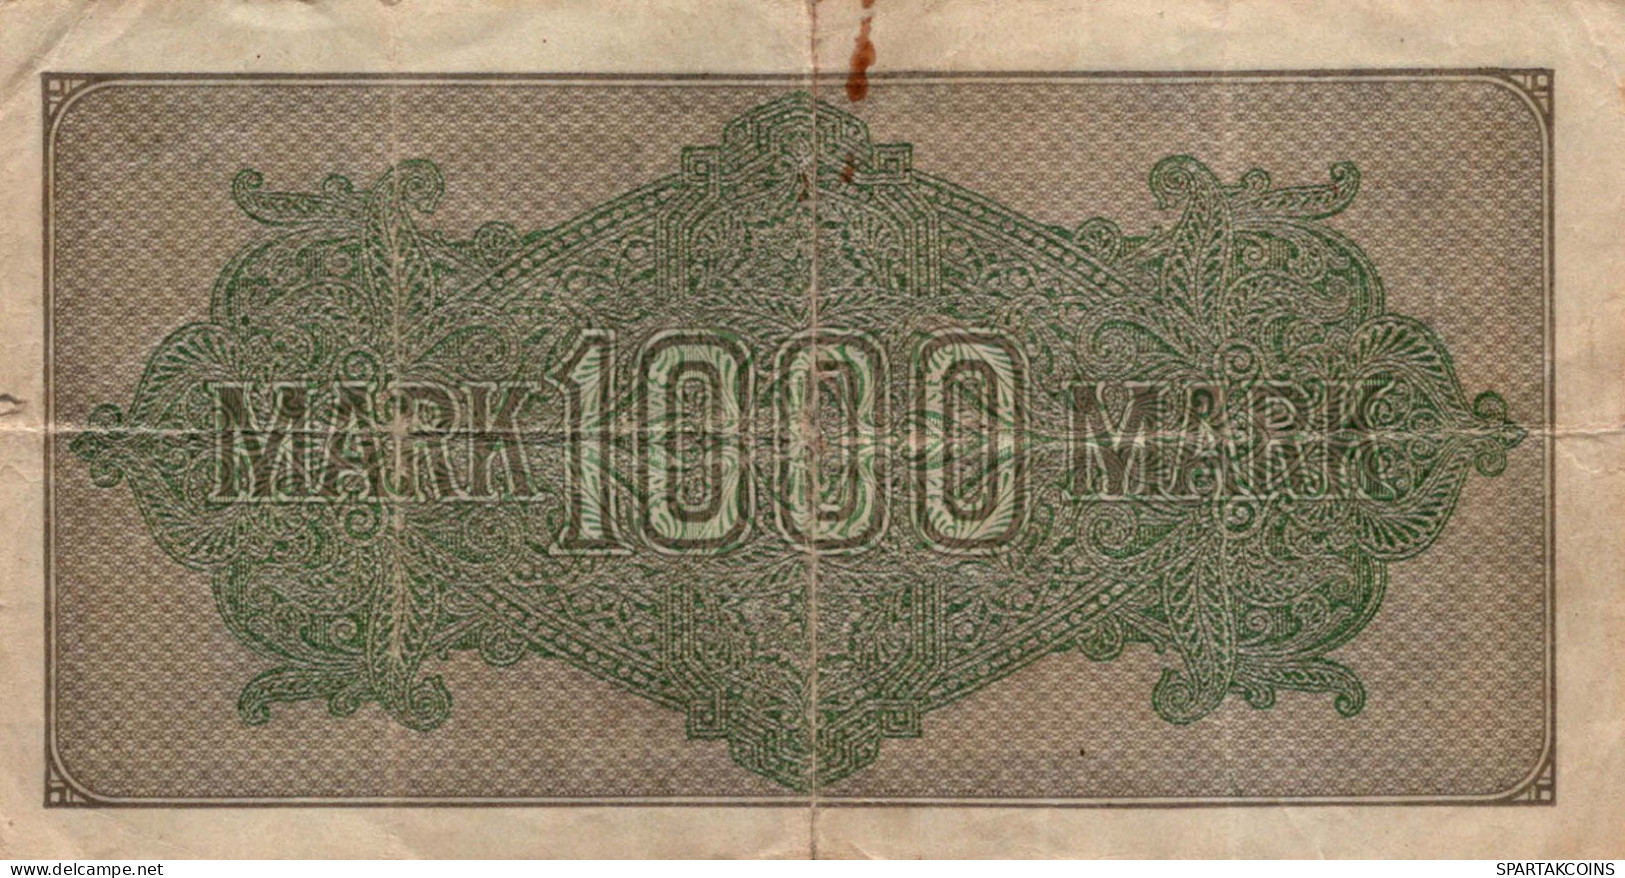 1000 MARK 1922 Stadt BERLIN DEUTSCHLAND Papiergeld Banknote #PL039 - [11] Local Banknote Issues